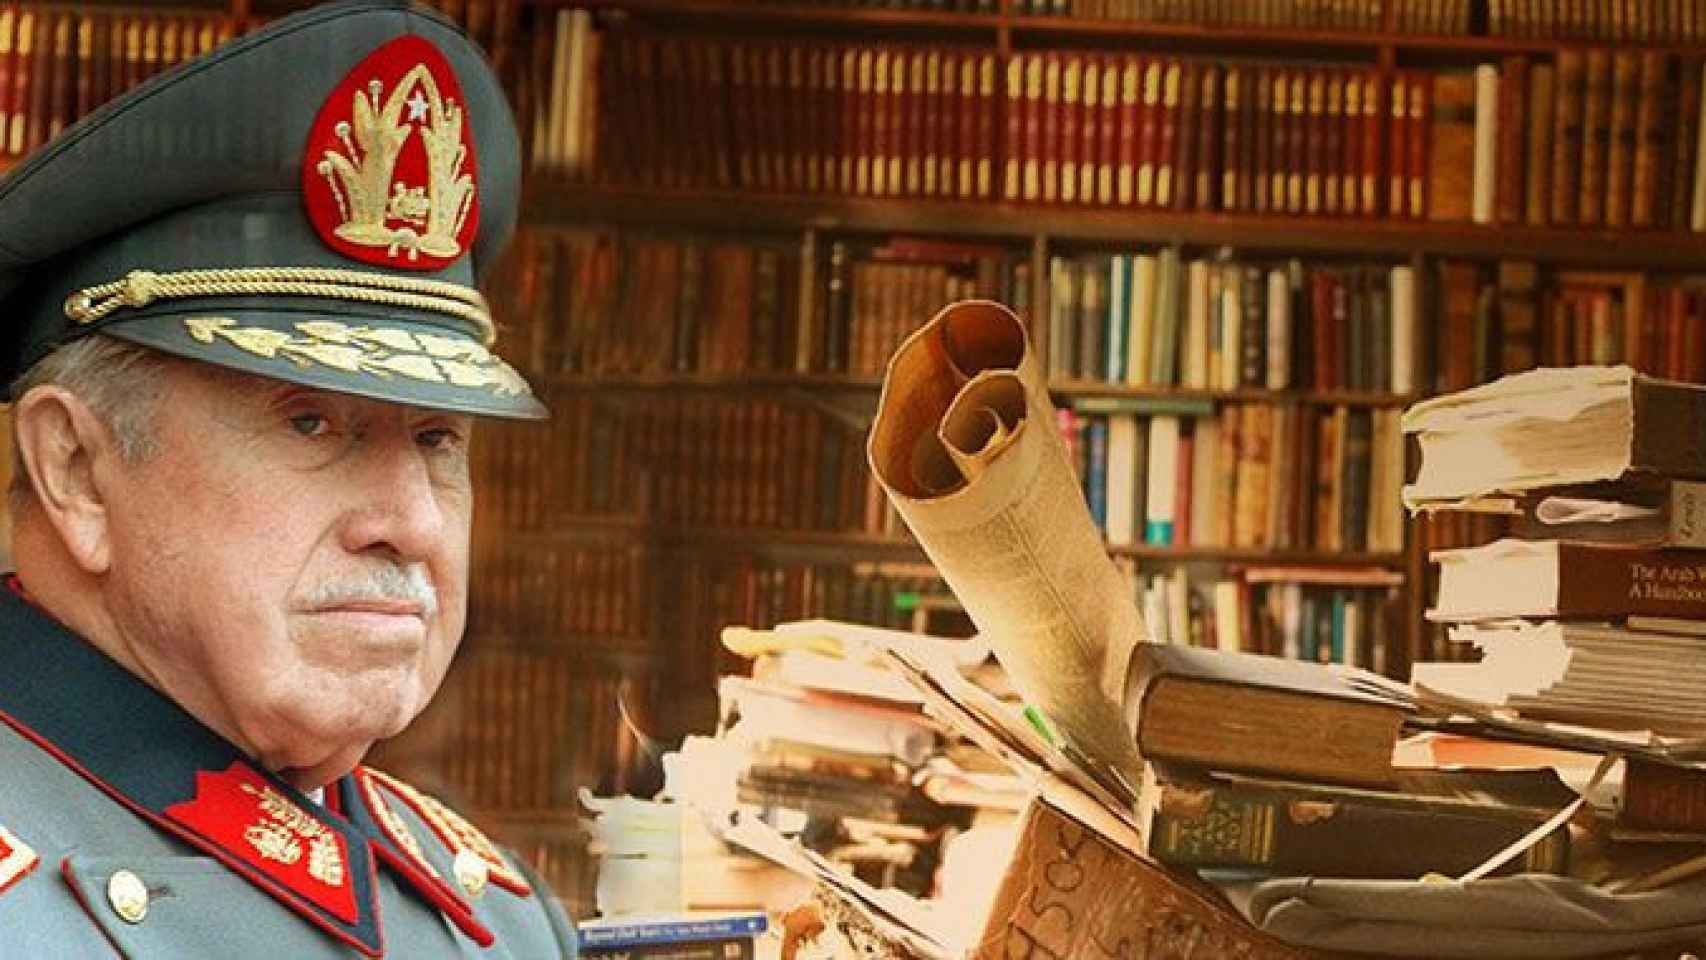 Biblioteca de un dictador: Pinochet